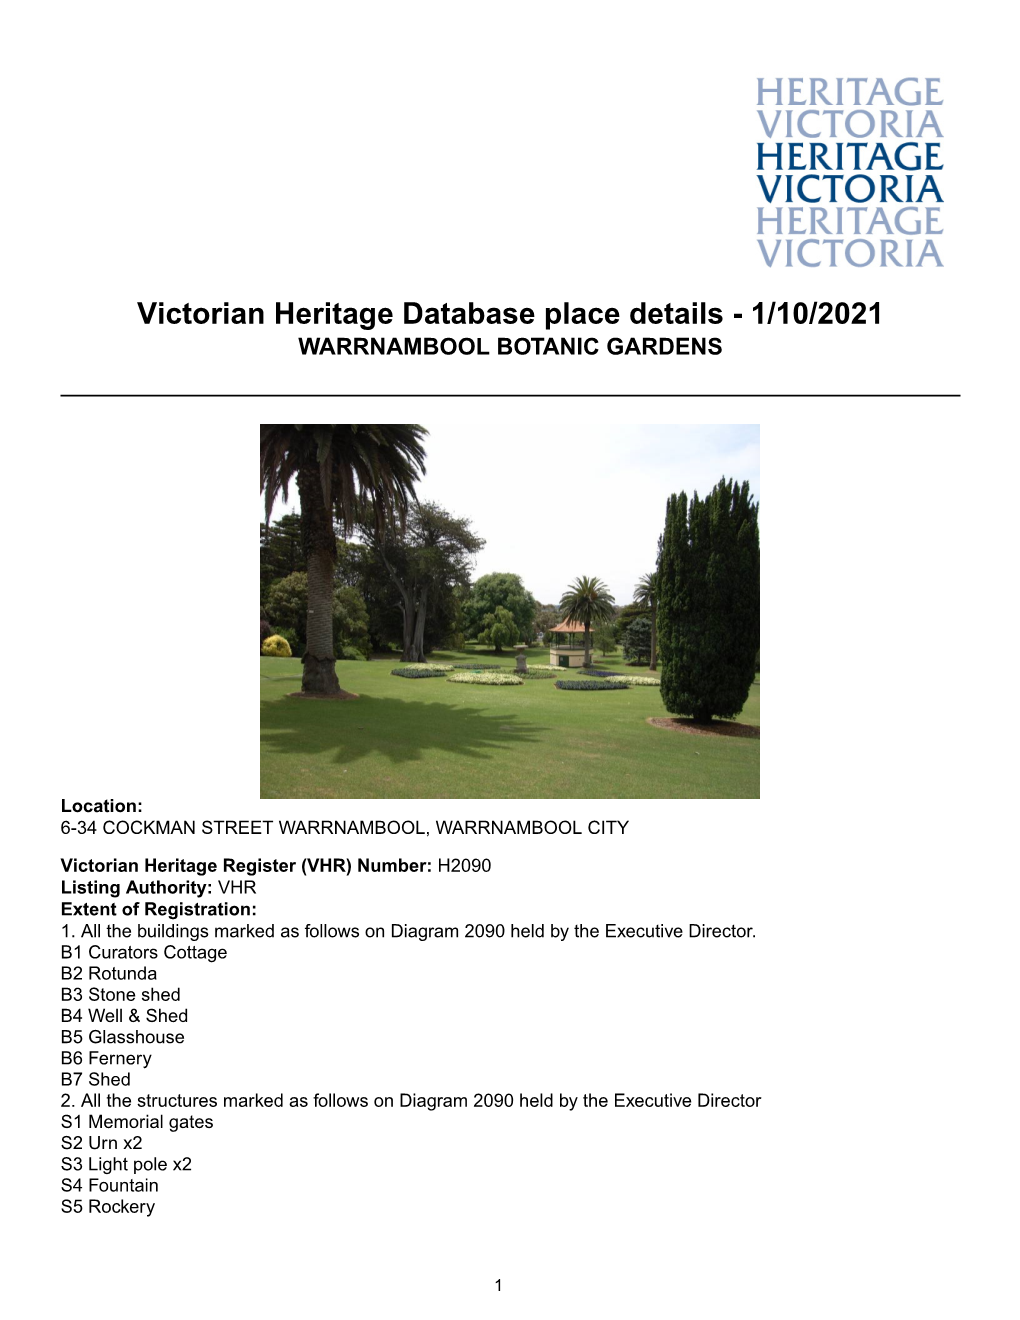 Victorian Heritage Database Place Details - 1/10/2021 WARRNAMBOOL BOTANIC GARDENS